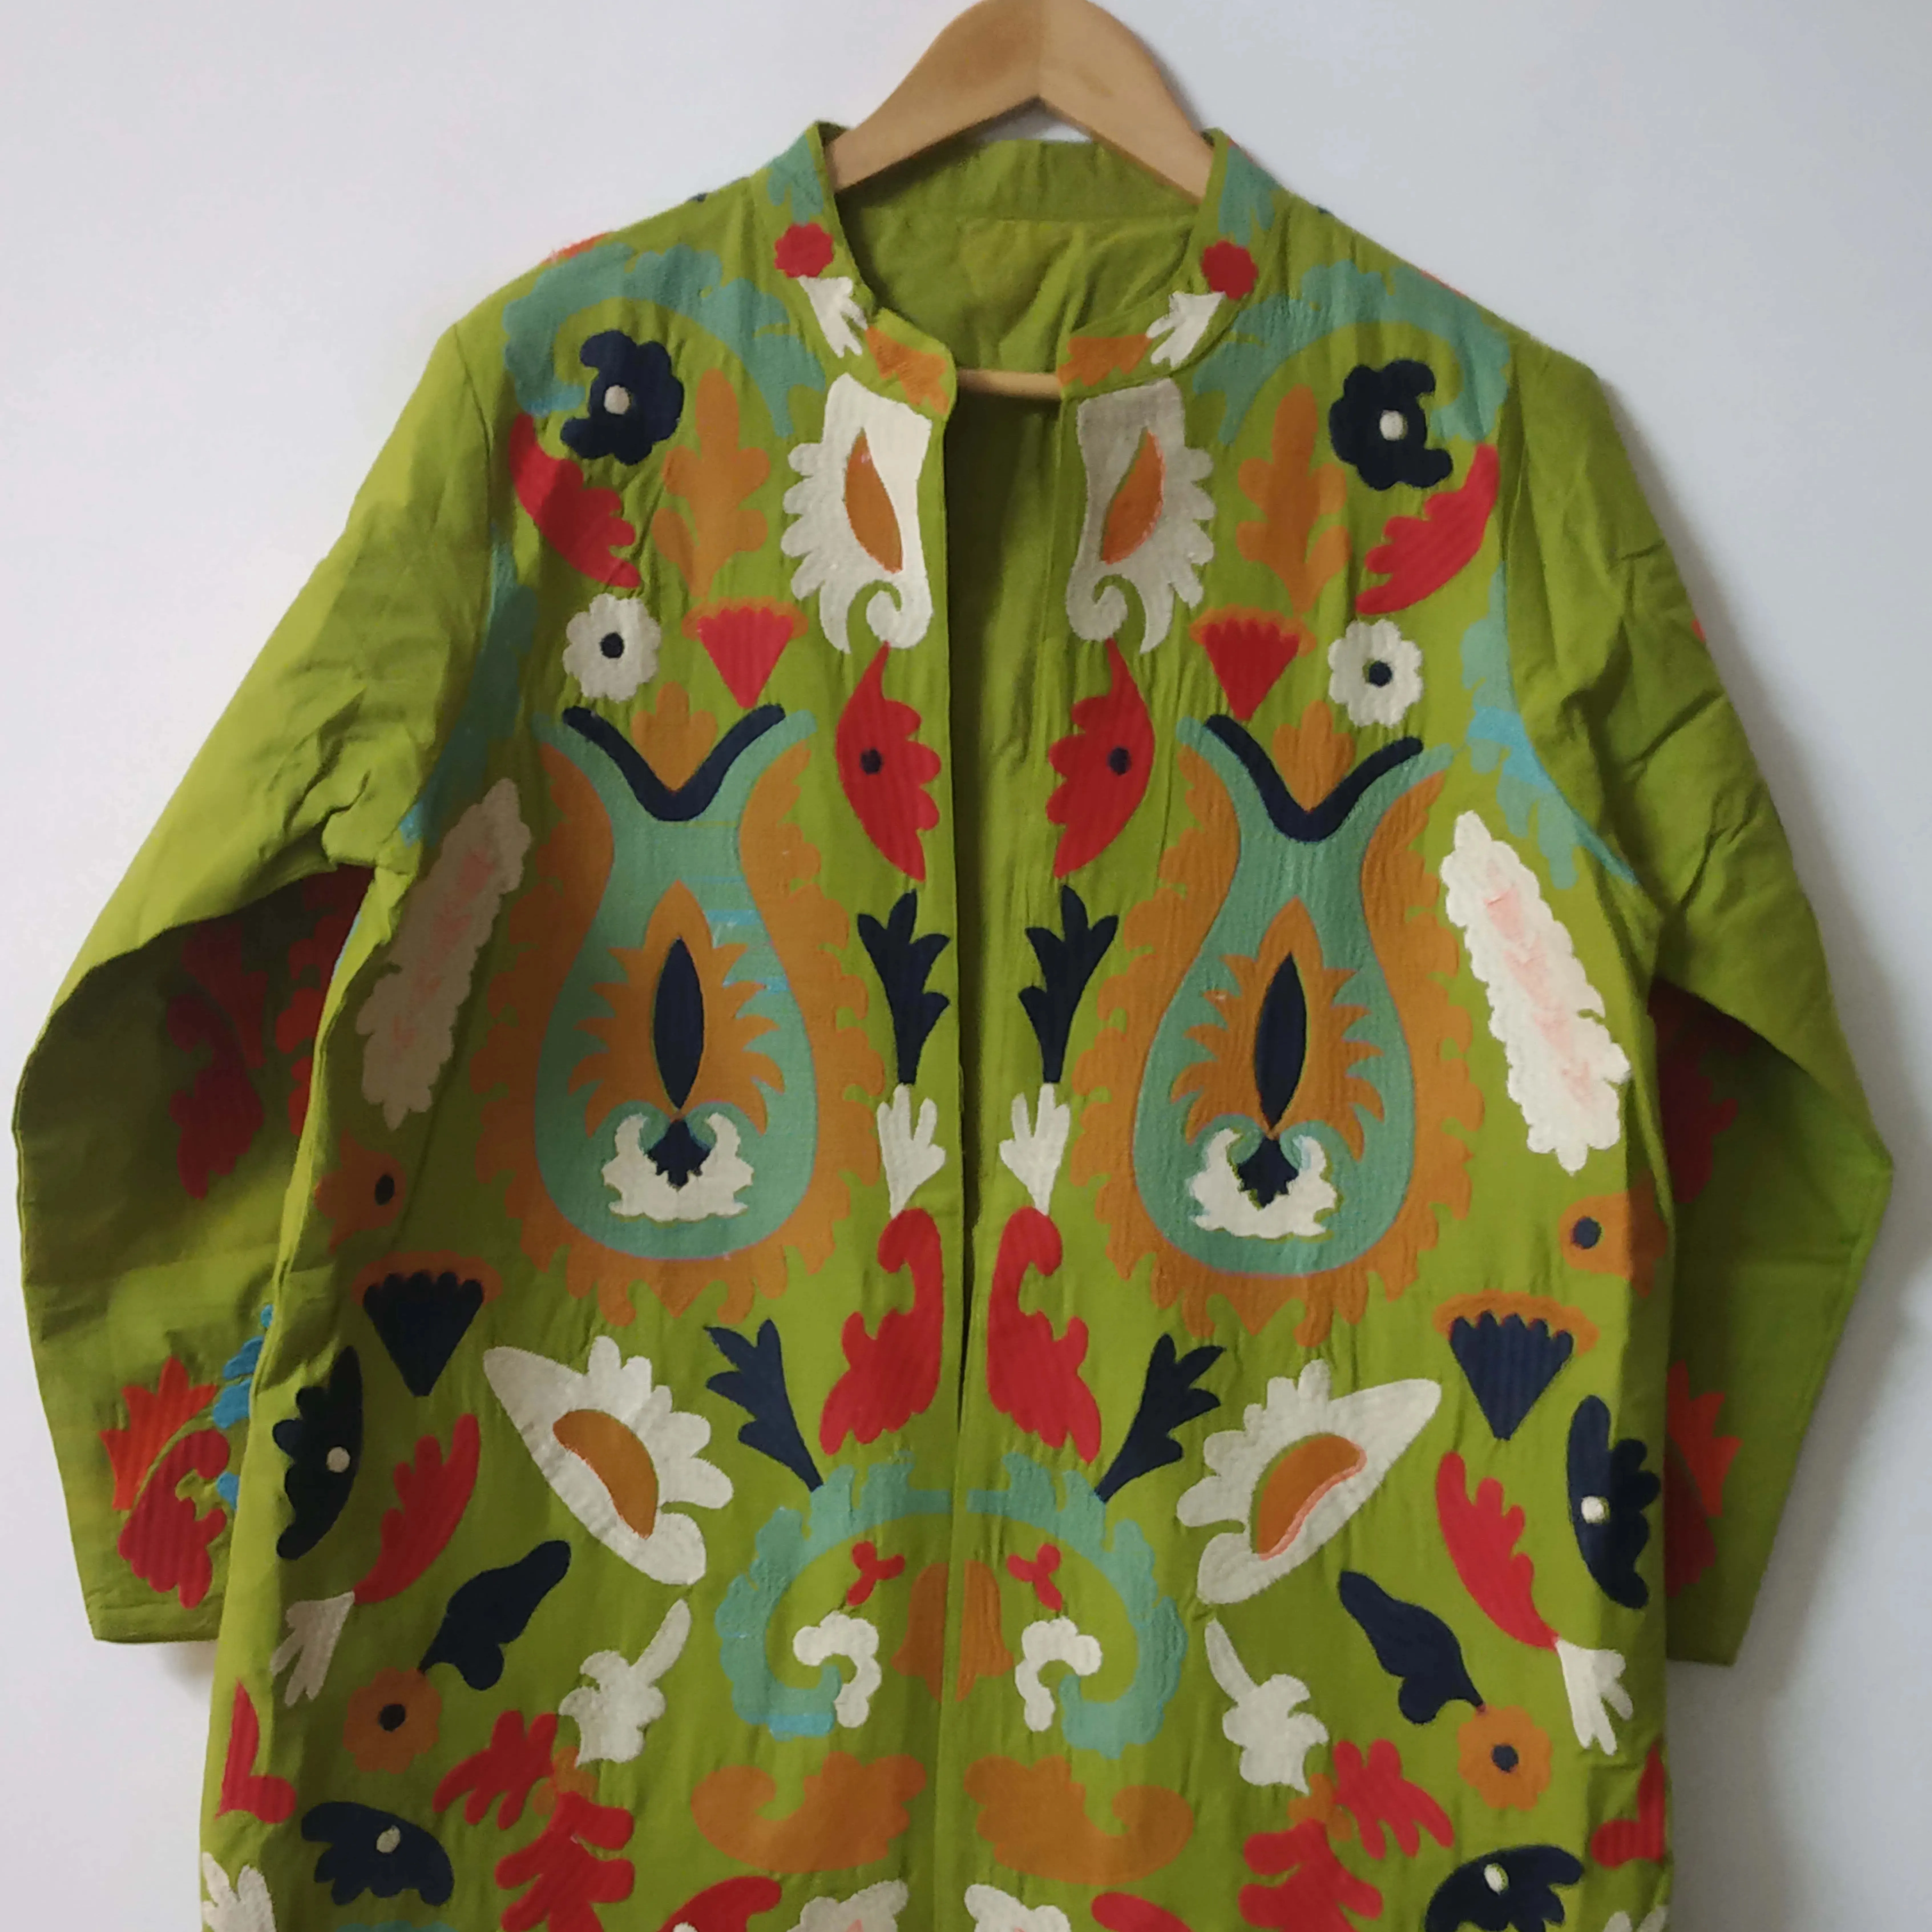 Jaket bordir hijau mantel lapis India mantel buatan tangan mantel depan wanita panjang terbuka mantel jaket Boho etnis, Kimono unik